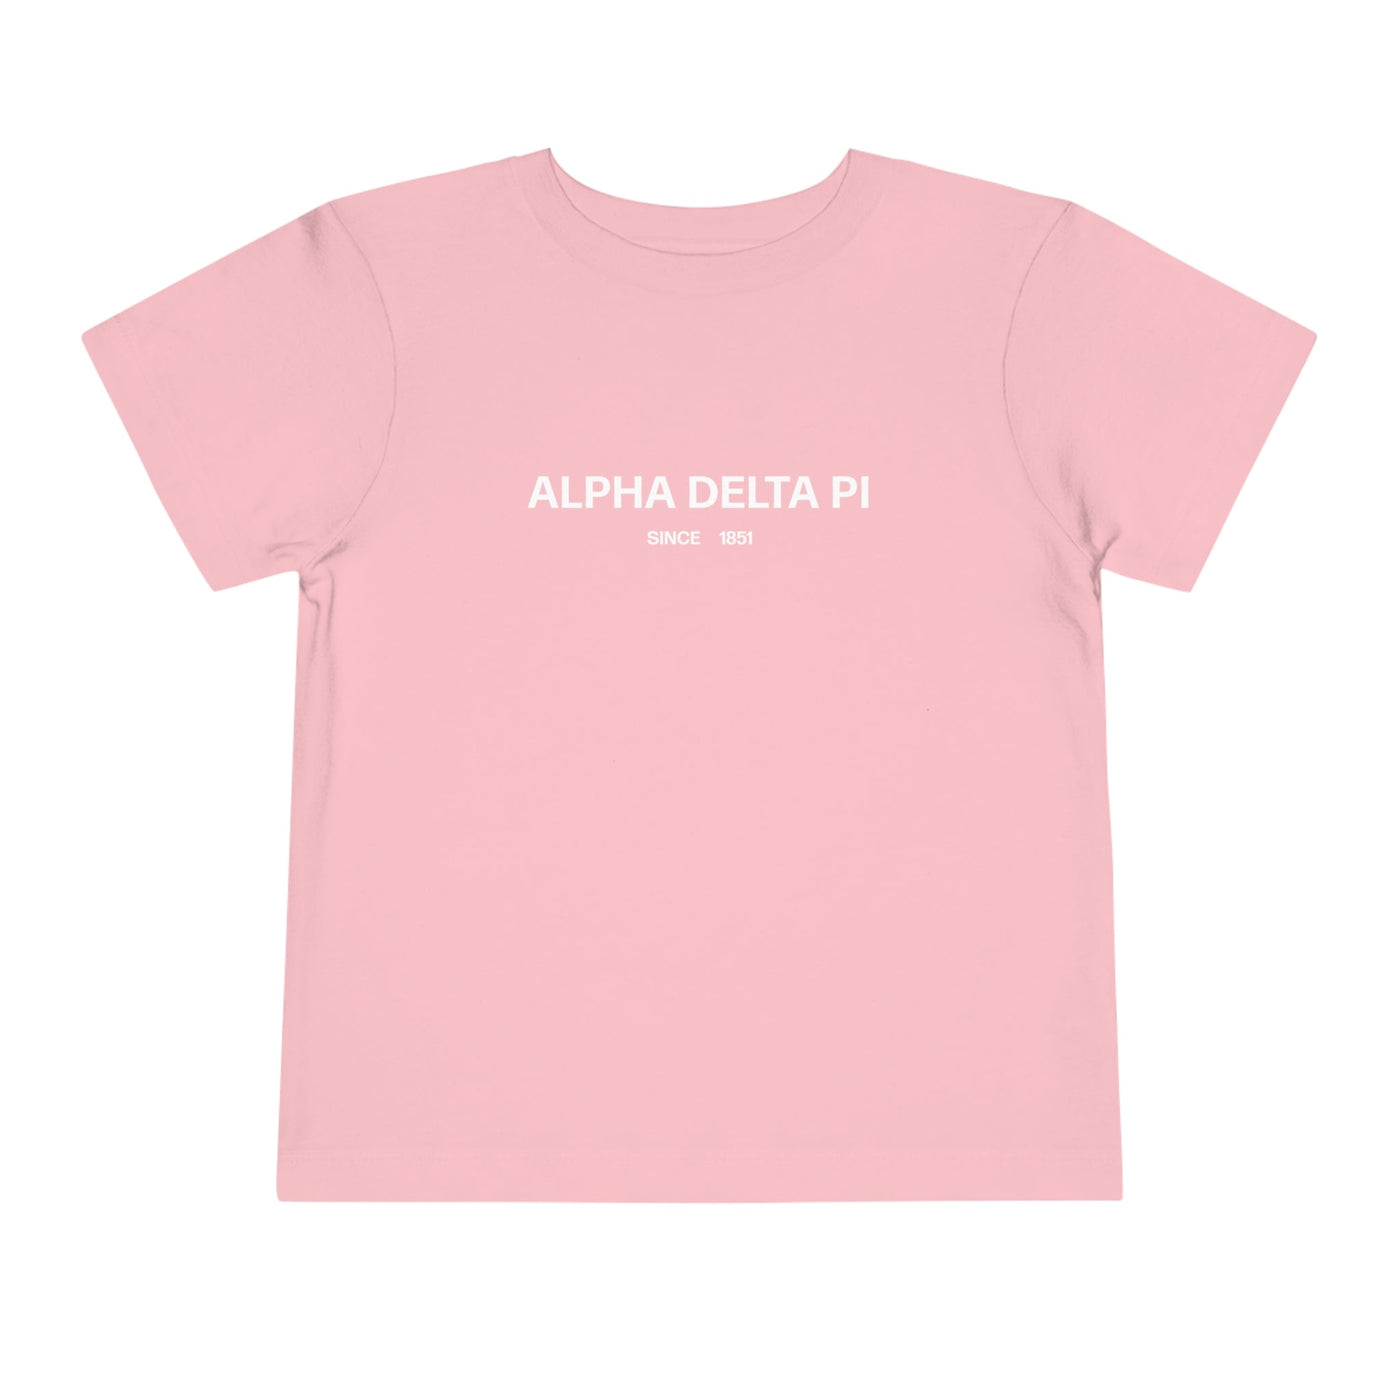 Alpha Delta Pi Sorority Baby Tee Crop Top